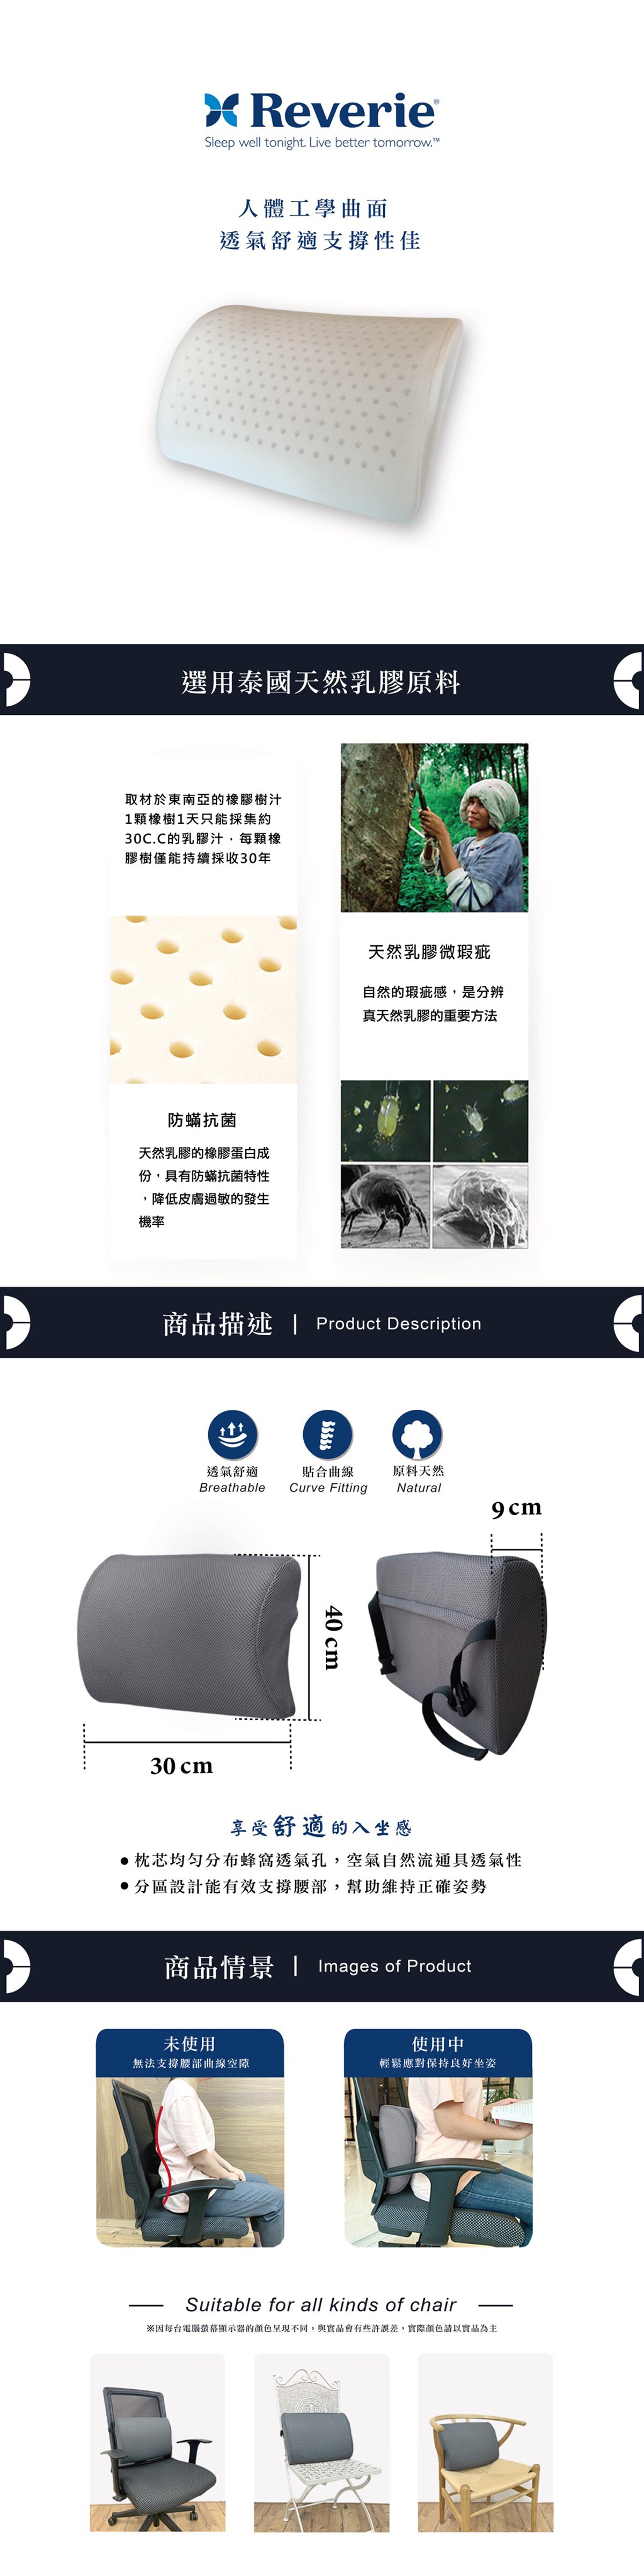 Reverie 3D透氣網布乳膠腰部靠墊 40 x 30 x 9 公分，選用泰國天然乳膠原料，透氣舒適有效支撐腰部。